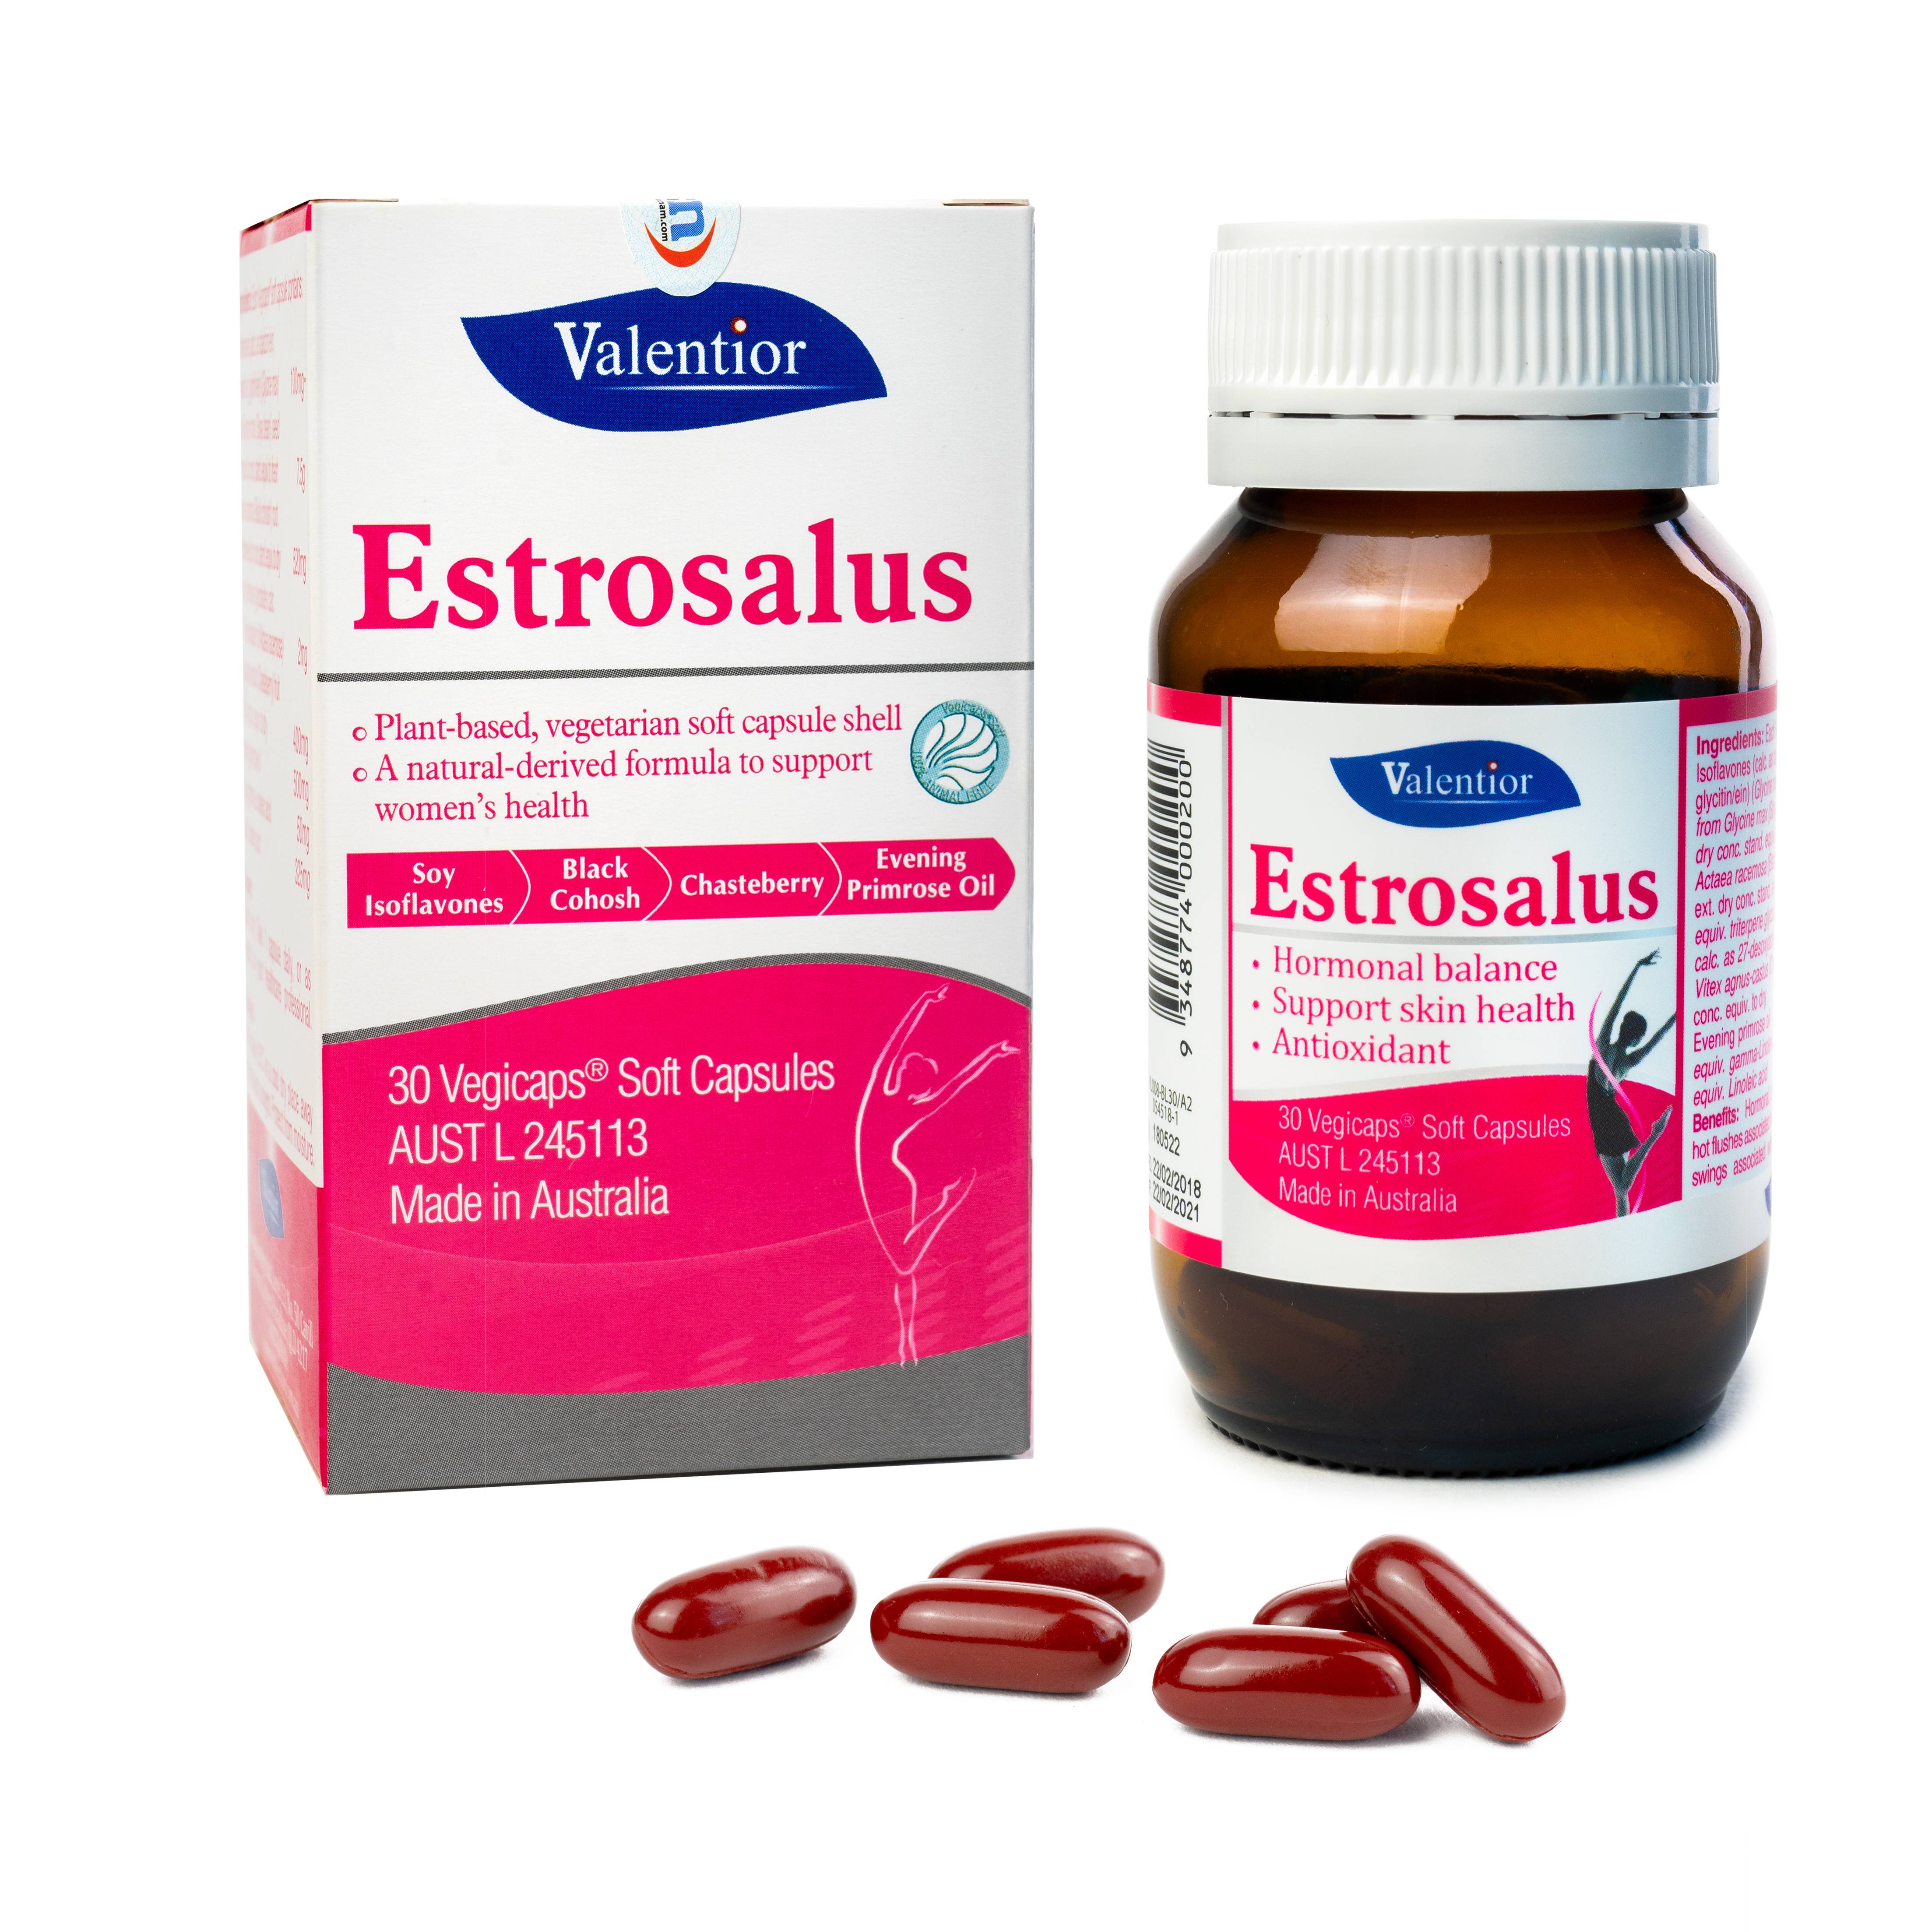 Thực phẩm bảo vệ sức khỏe Estrosalus Hỗ trợ sức khỏe, sinh lý của nữ giới.